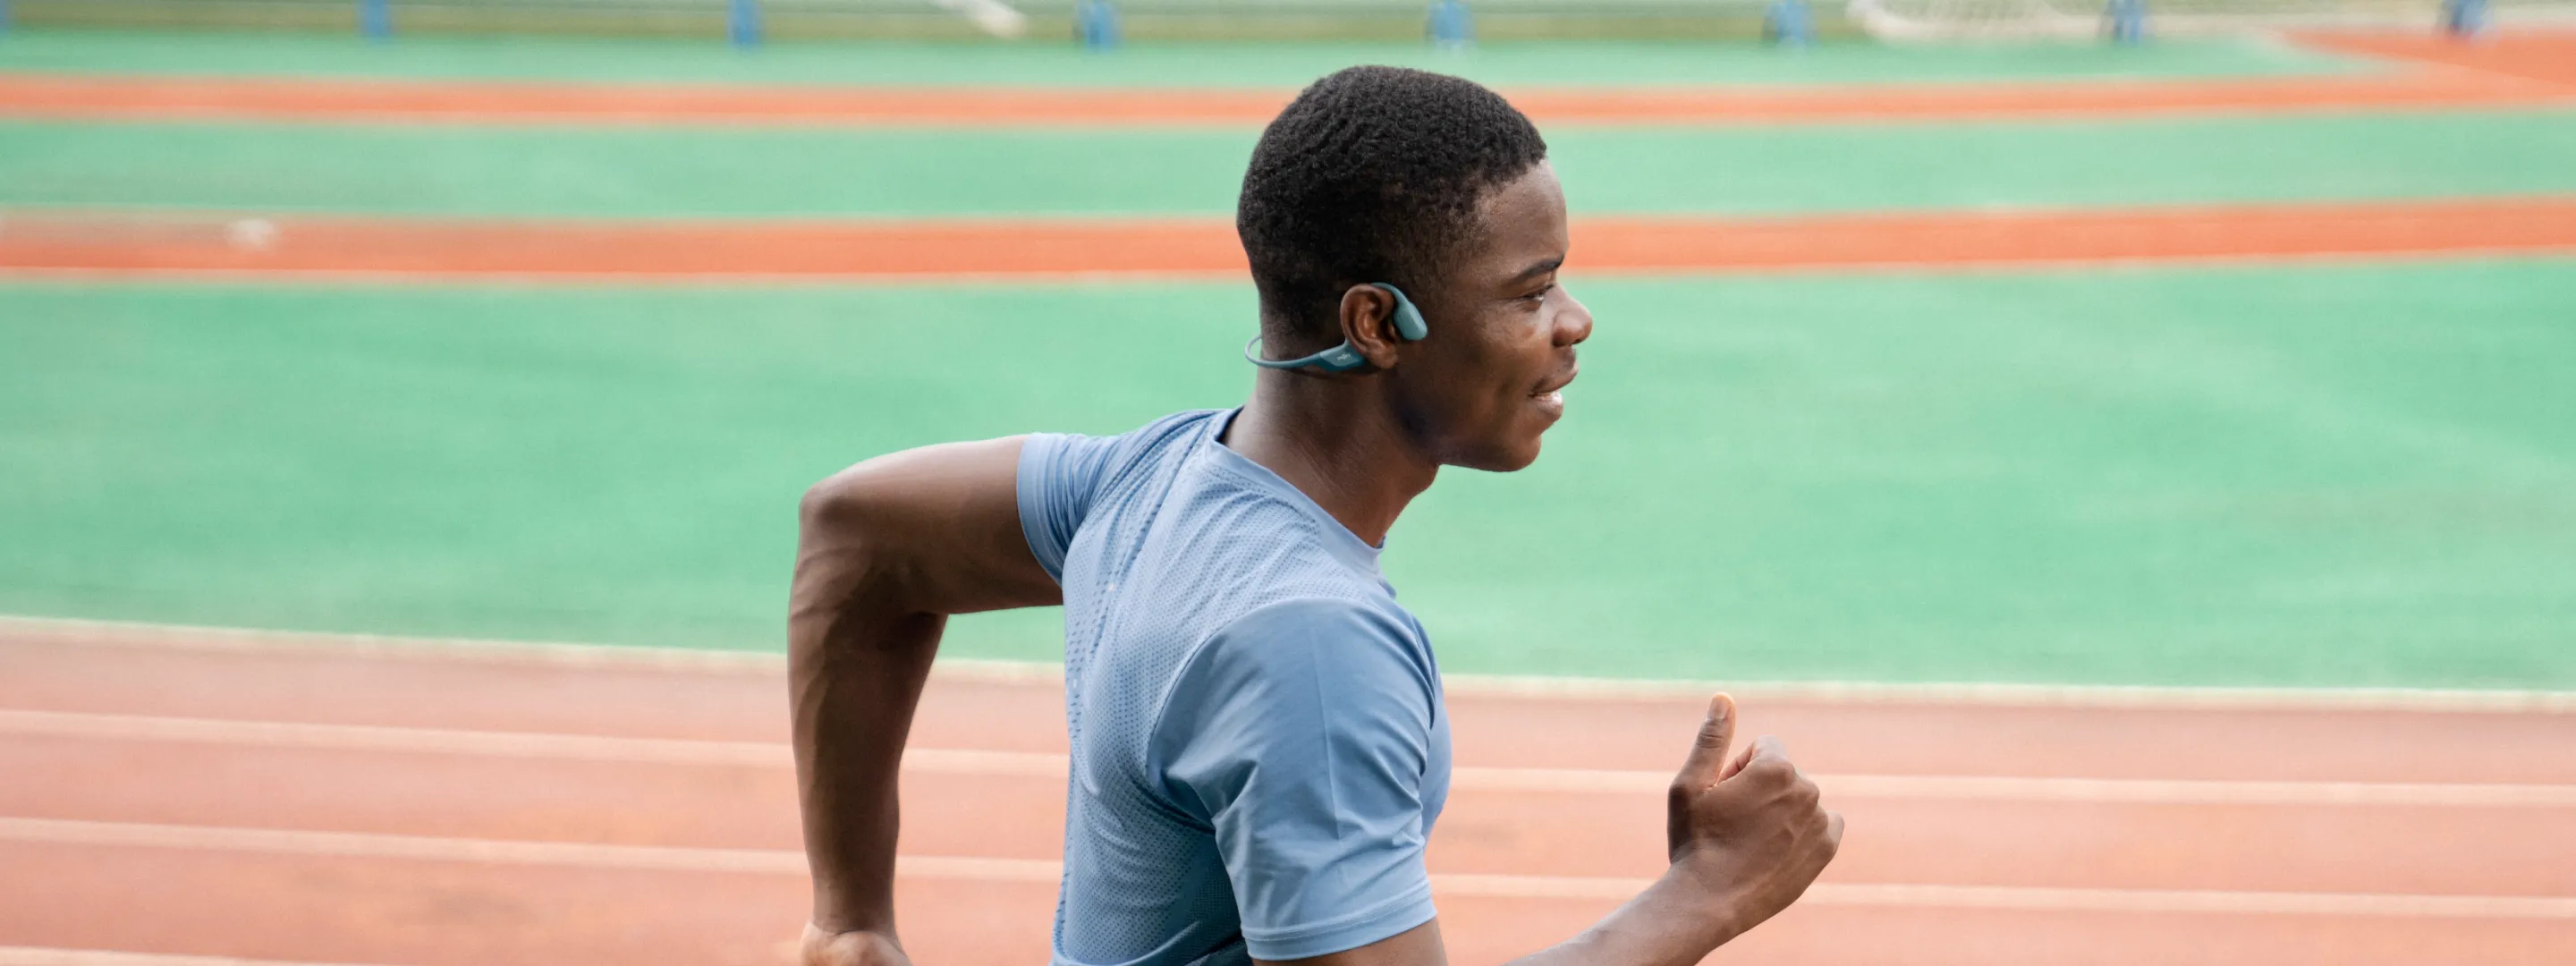 bluetooth running headphones for athletes shokz united states